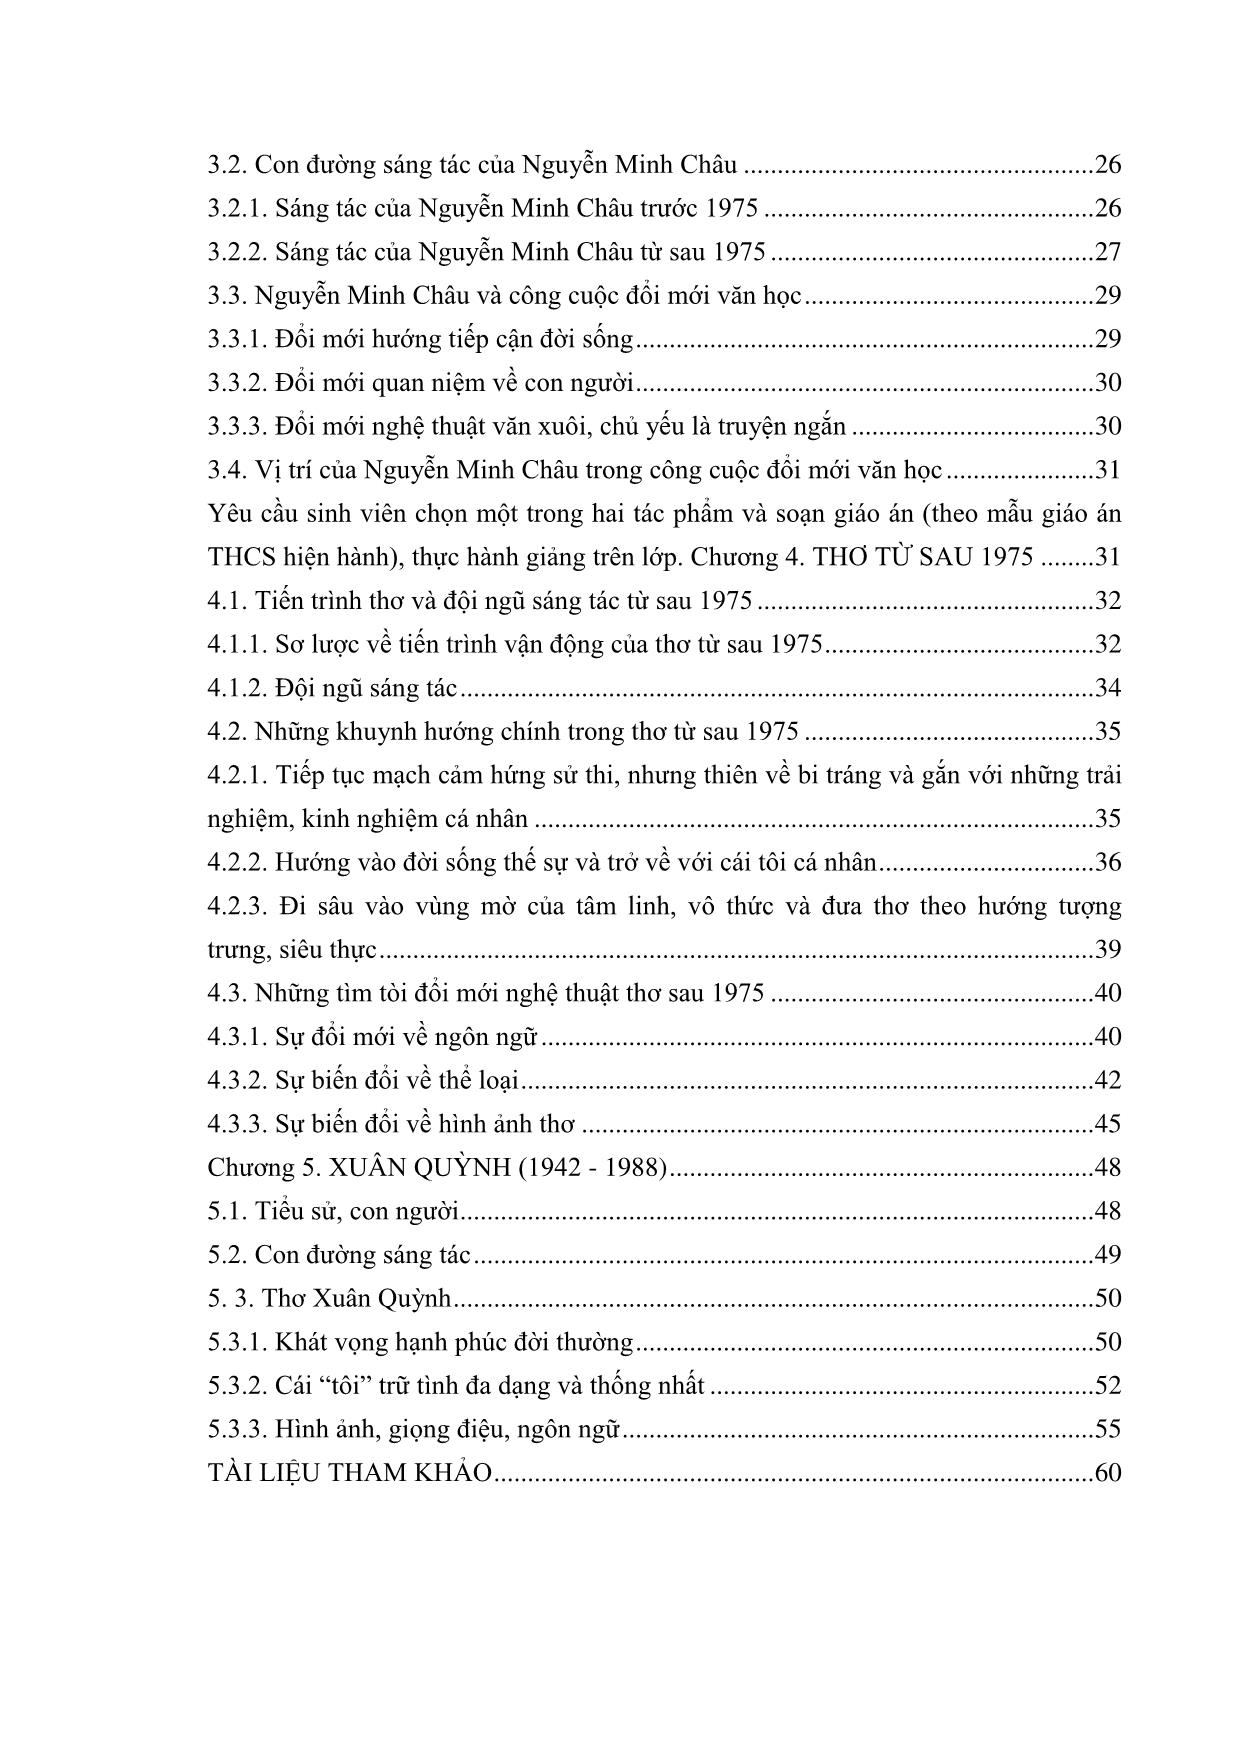 Giáo trình Văn học Việt Nam hiện đại 2B trang 3